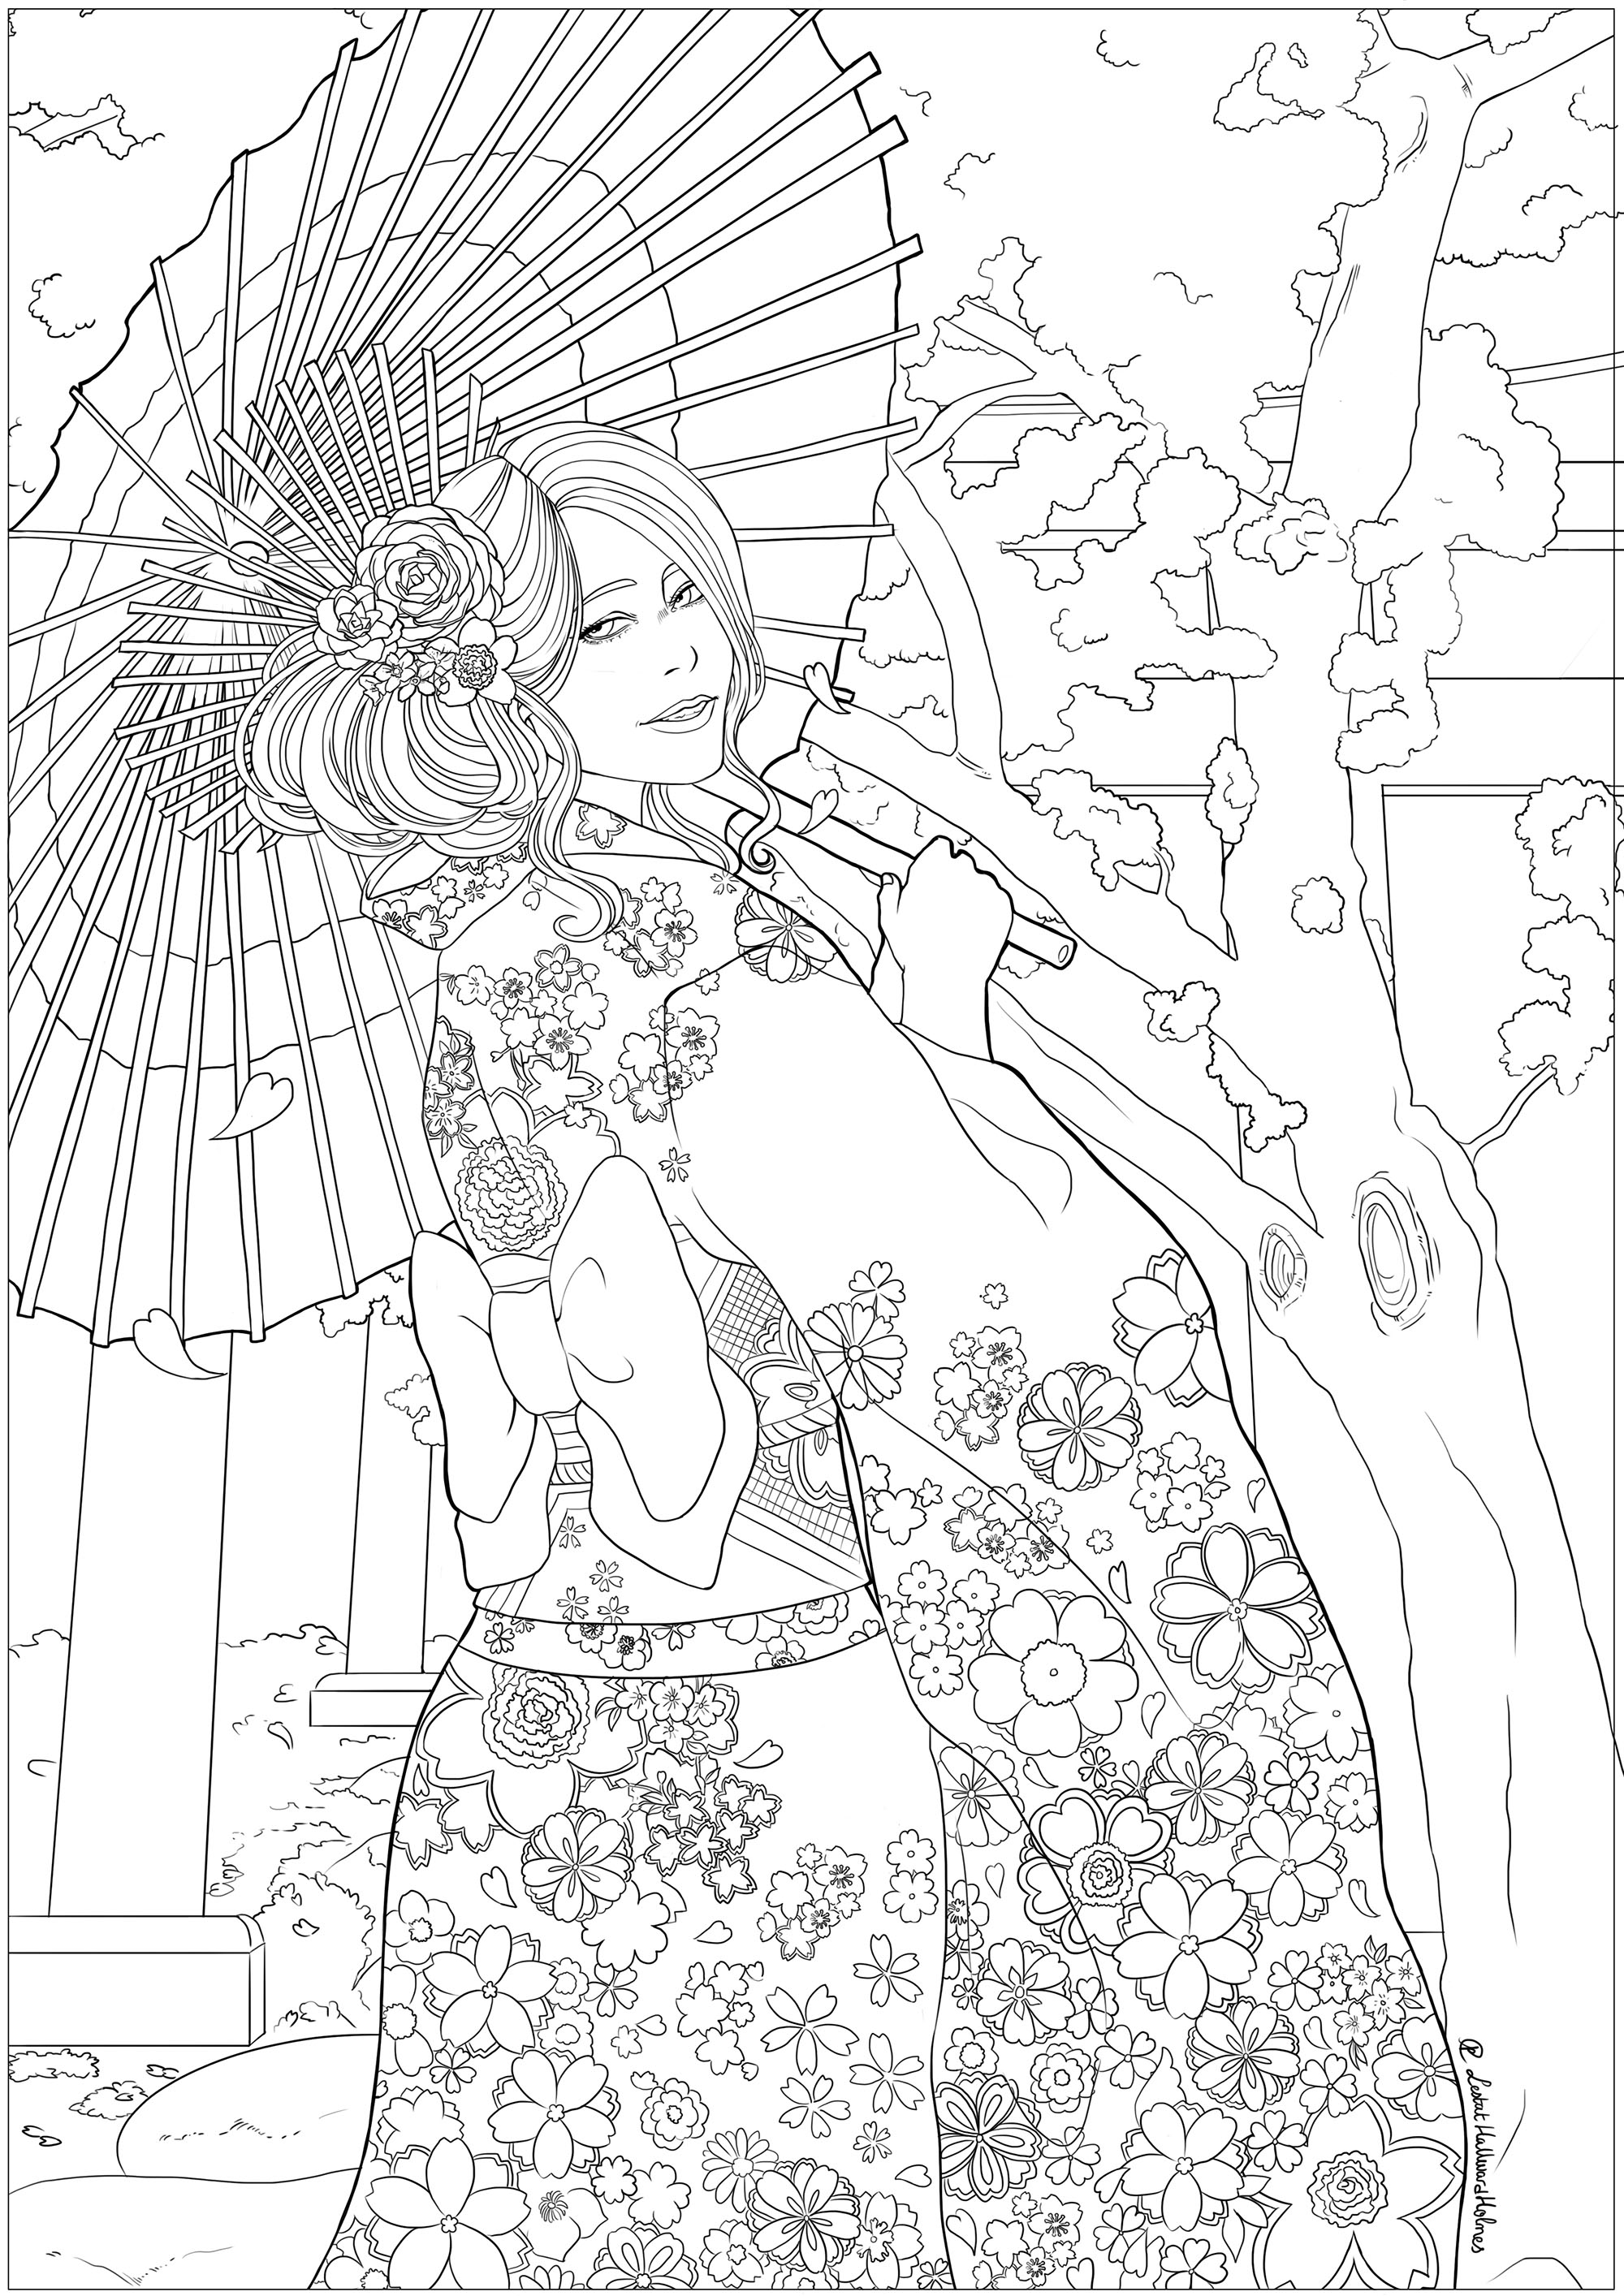 Joven elegante delante de un templo y cerezos en flor, con su yukata más bonito. Dibujo celebrando el Hanami, la fiesta japonesa de la primavera.